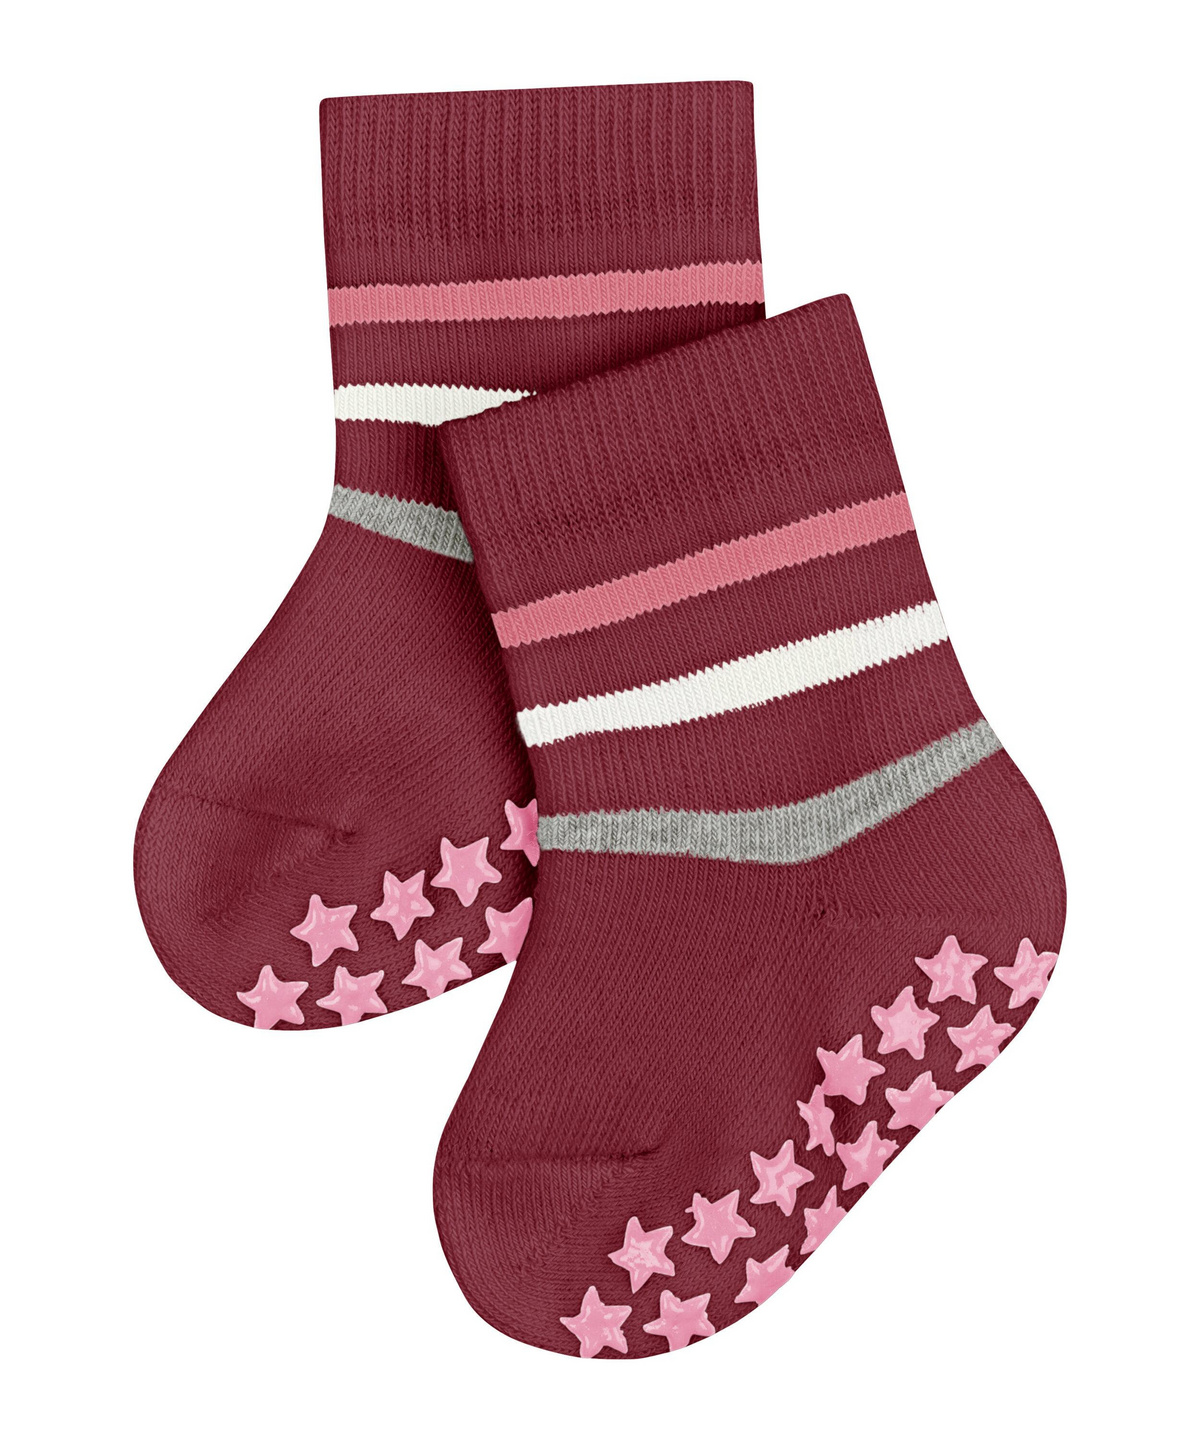 FALKE Unisex Baby Socken Multi Stripes Catspads 